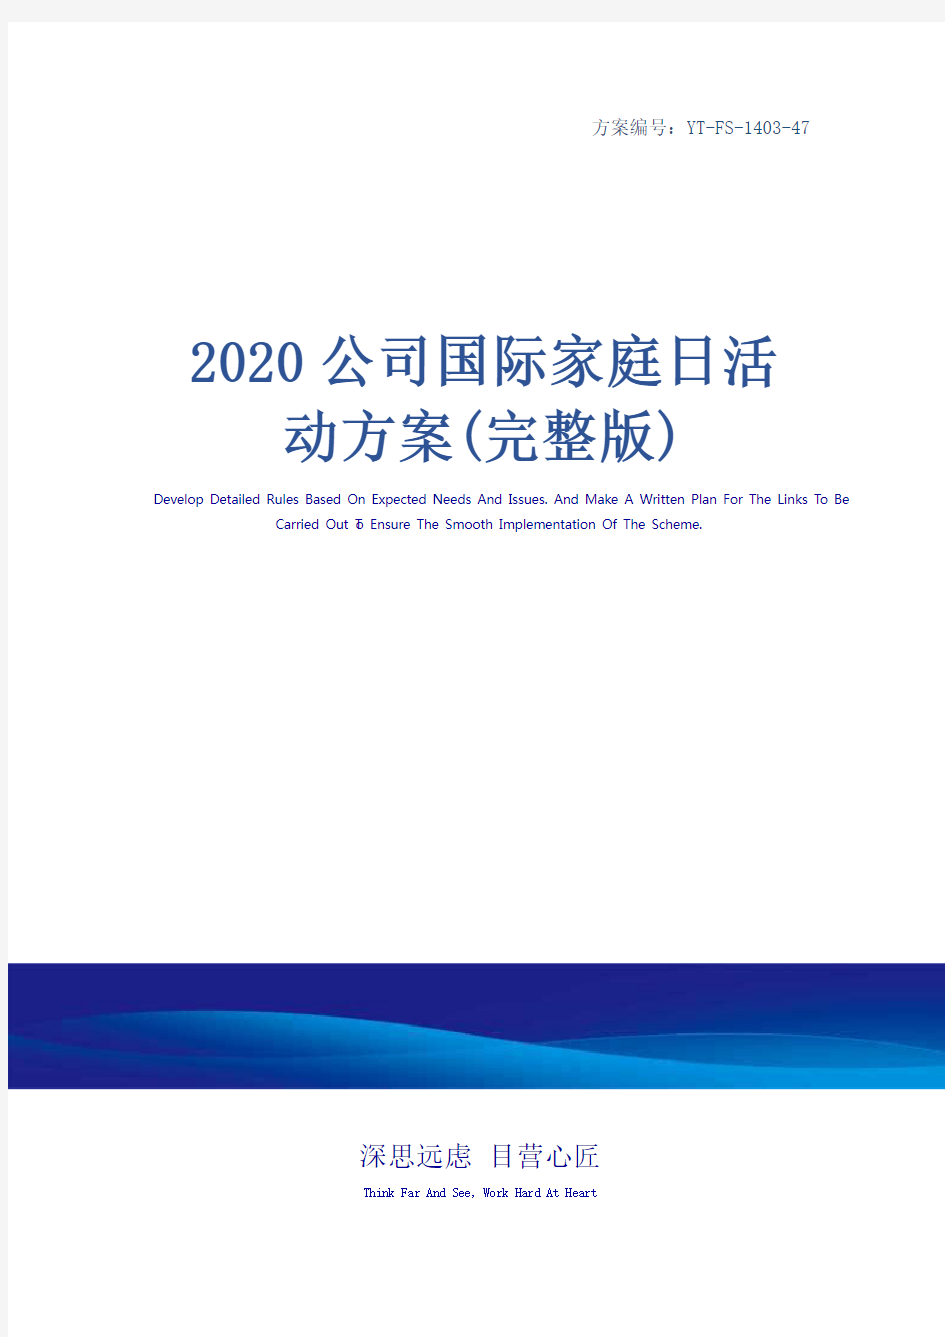 2020公司国际家庭日活动方案(完整版)